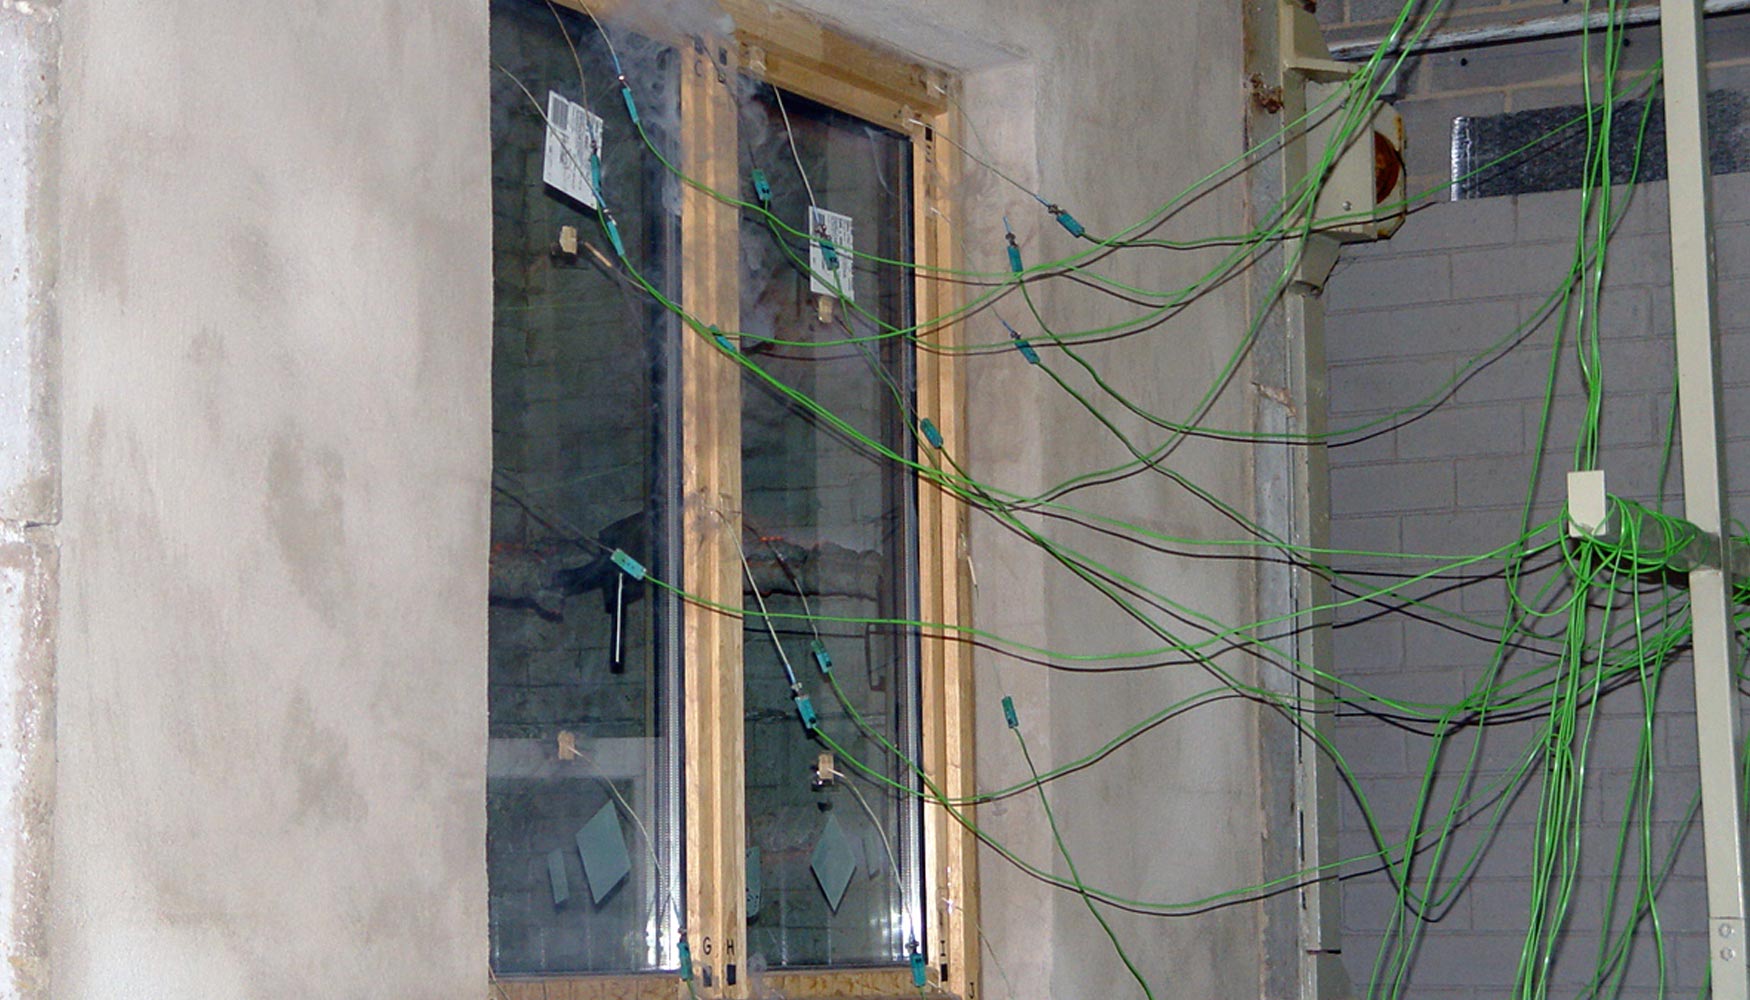 Ensayo de resistencia al fuego realizado con una ventana de madera en Ensatec